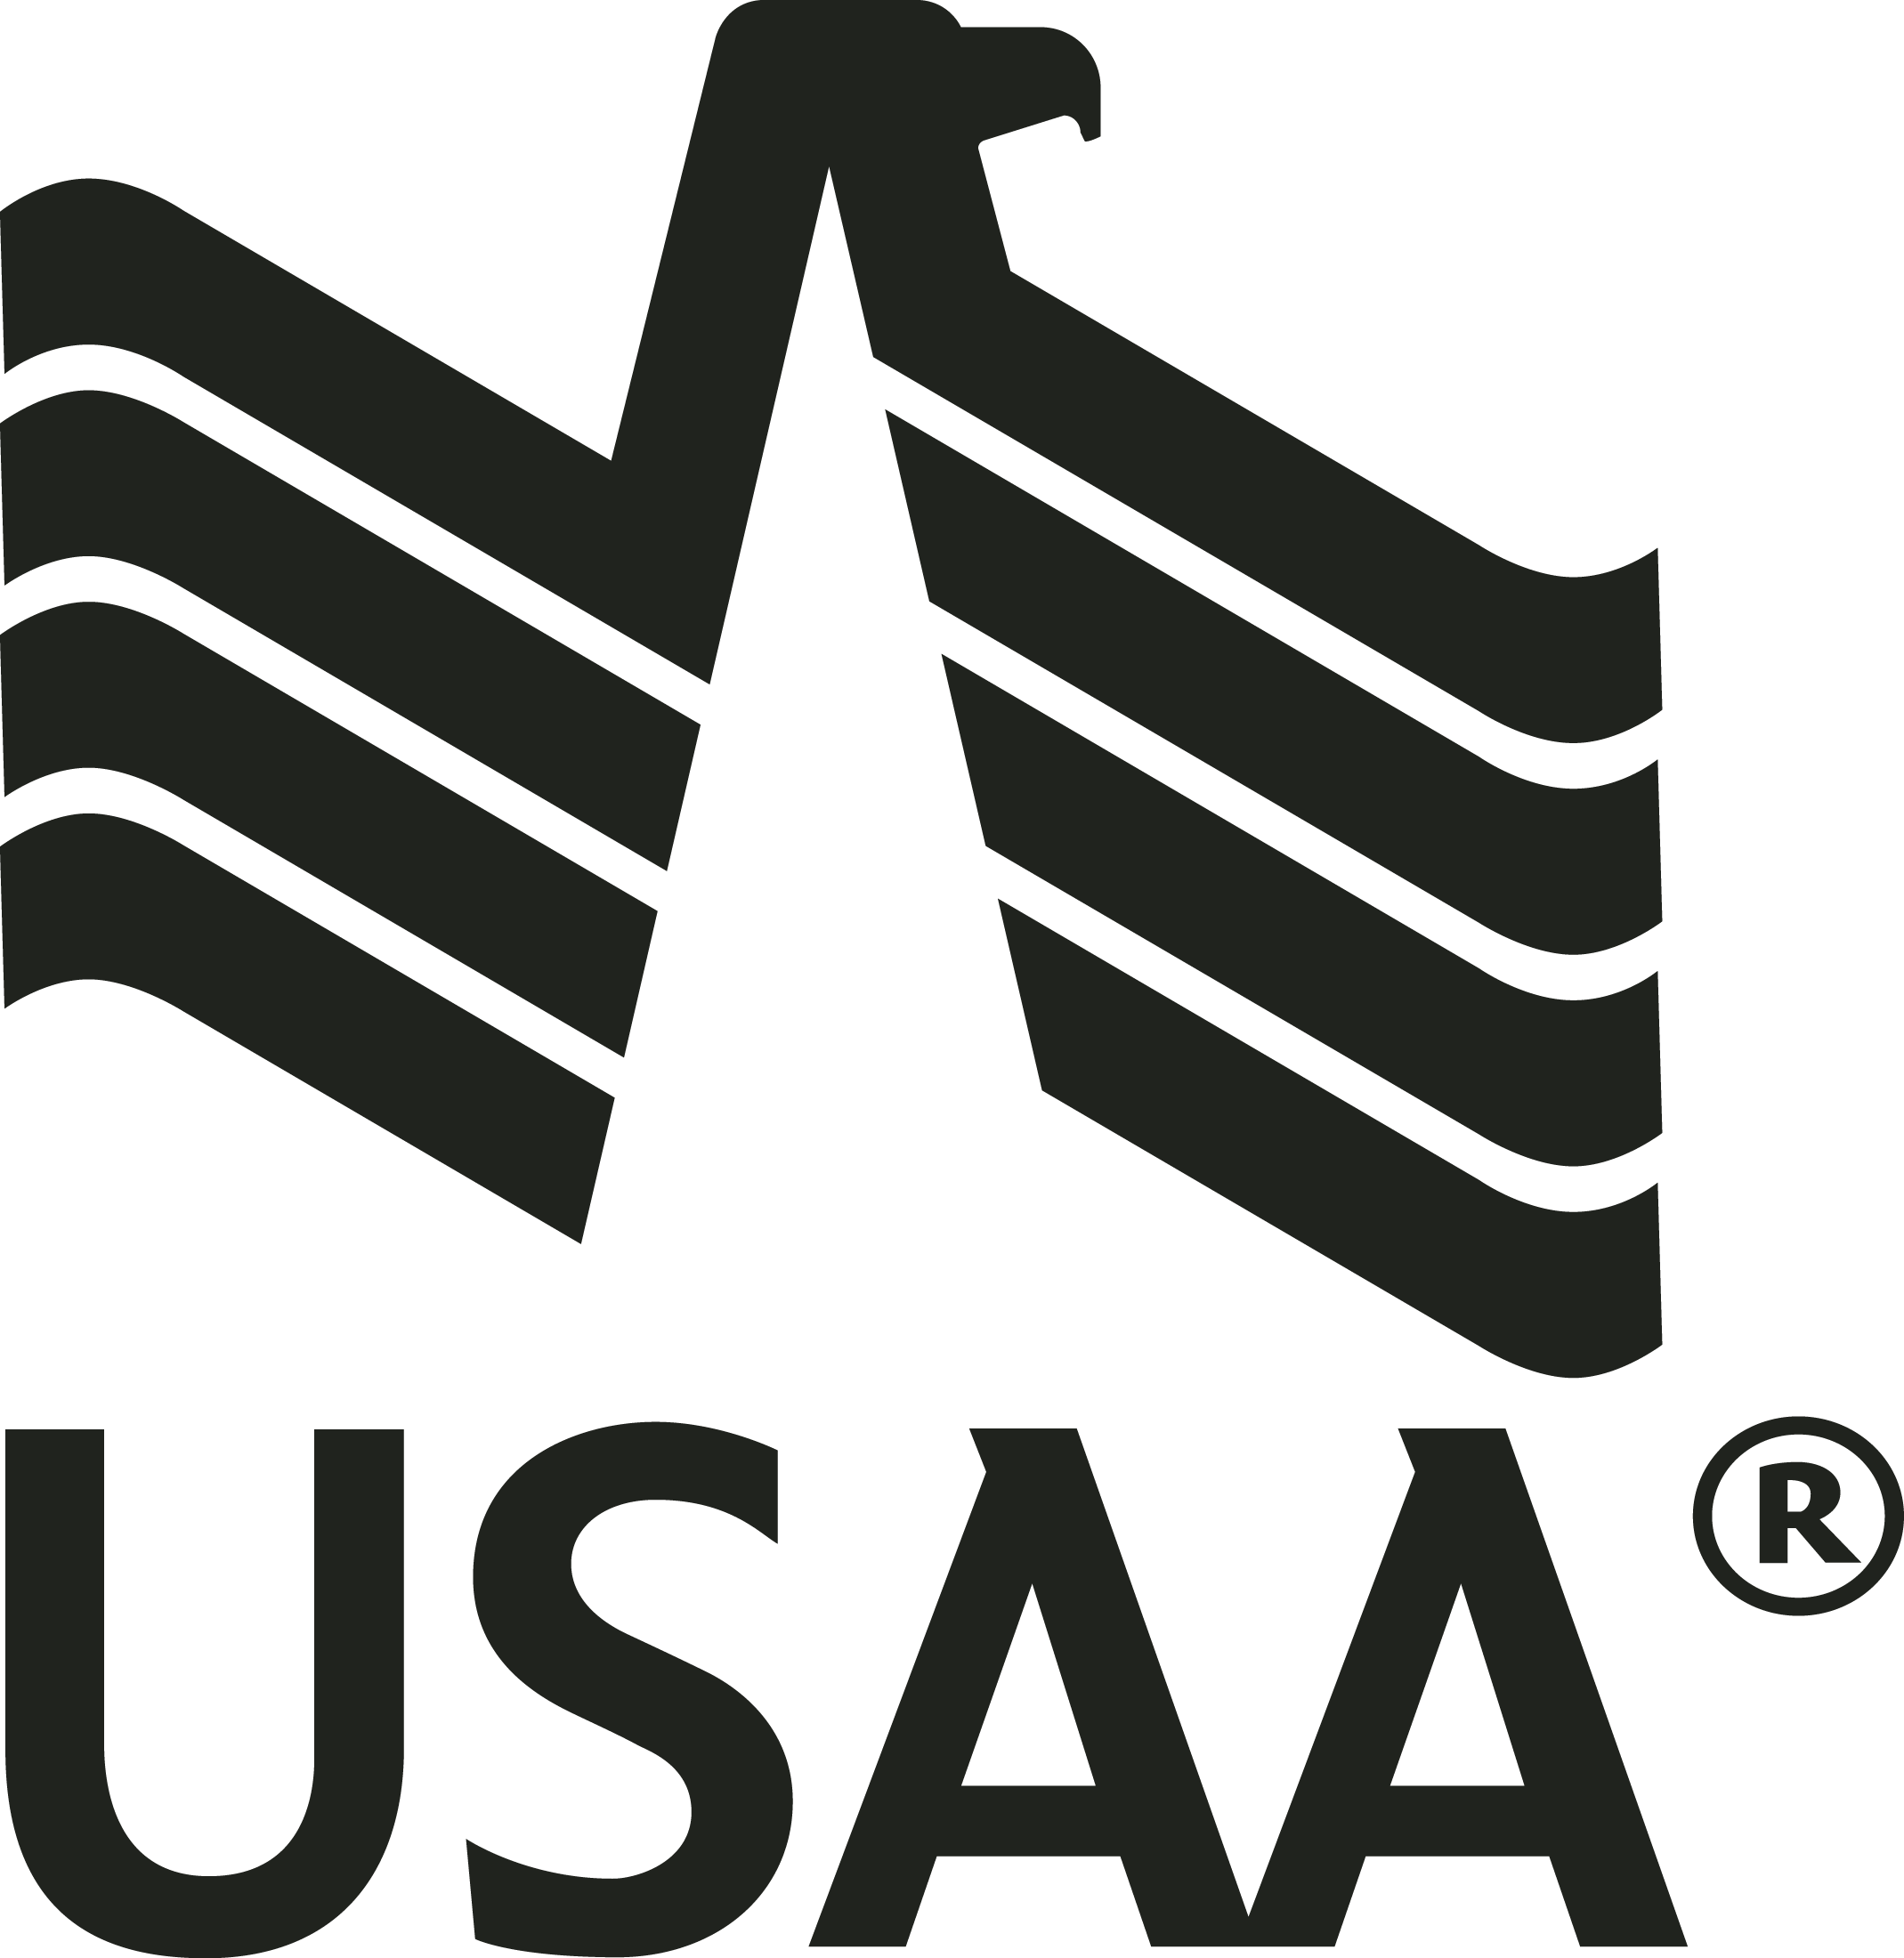 USAA Logo Download Vector